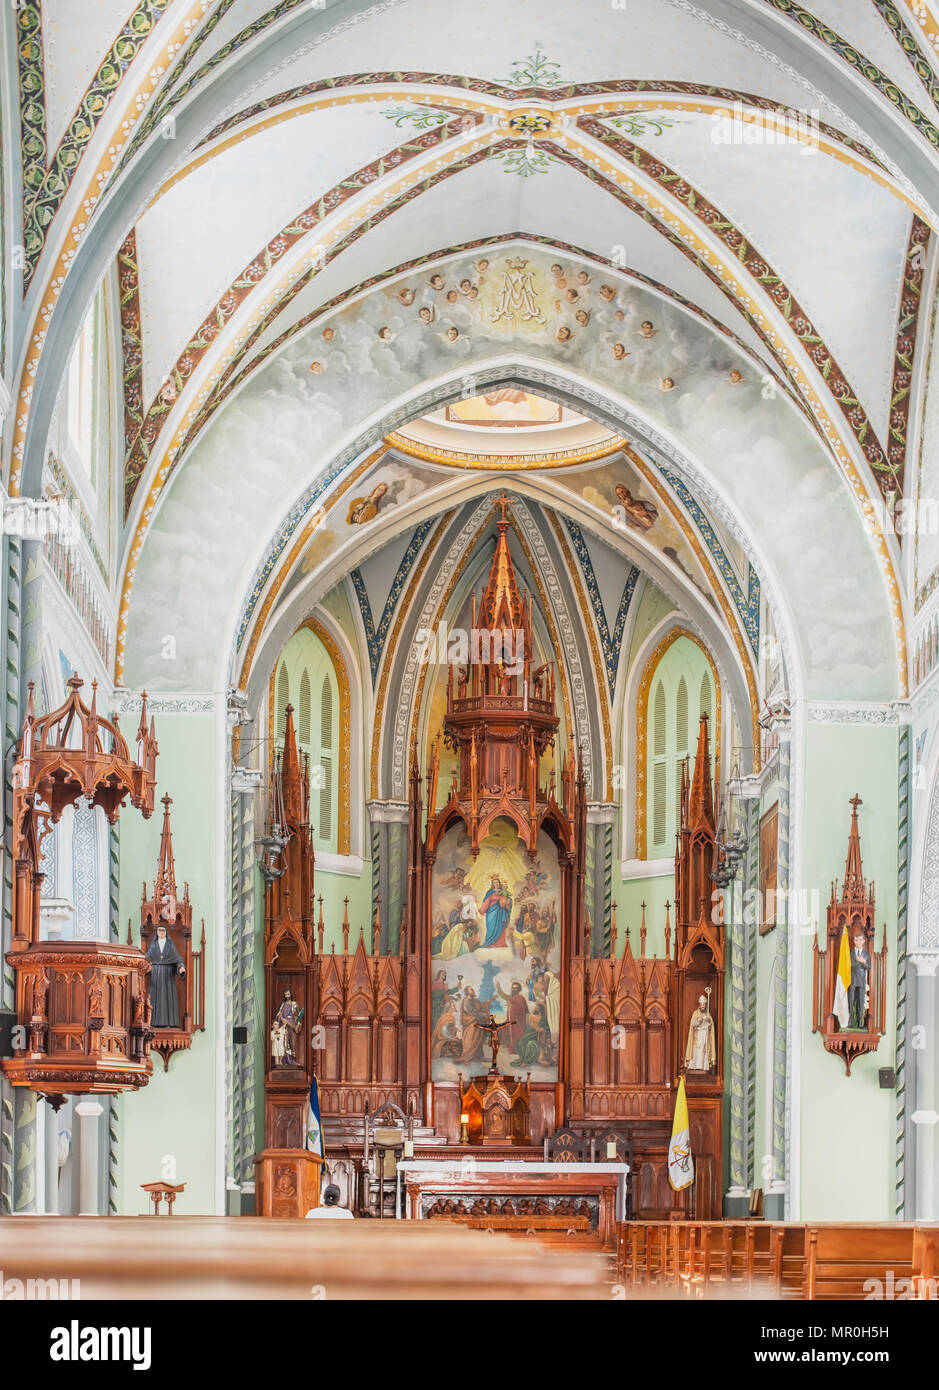 Interno del splendidamente decorata chiesa Iglesia Maria Auxiliadora, costruita dai Salesiani nel 1910 ed è situato nel centro storico di Granada in Nicar Foto Stock